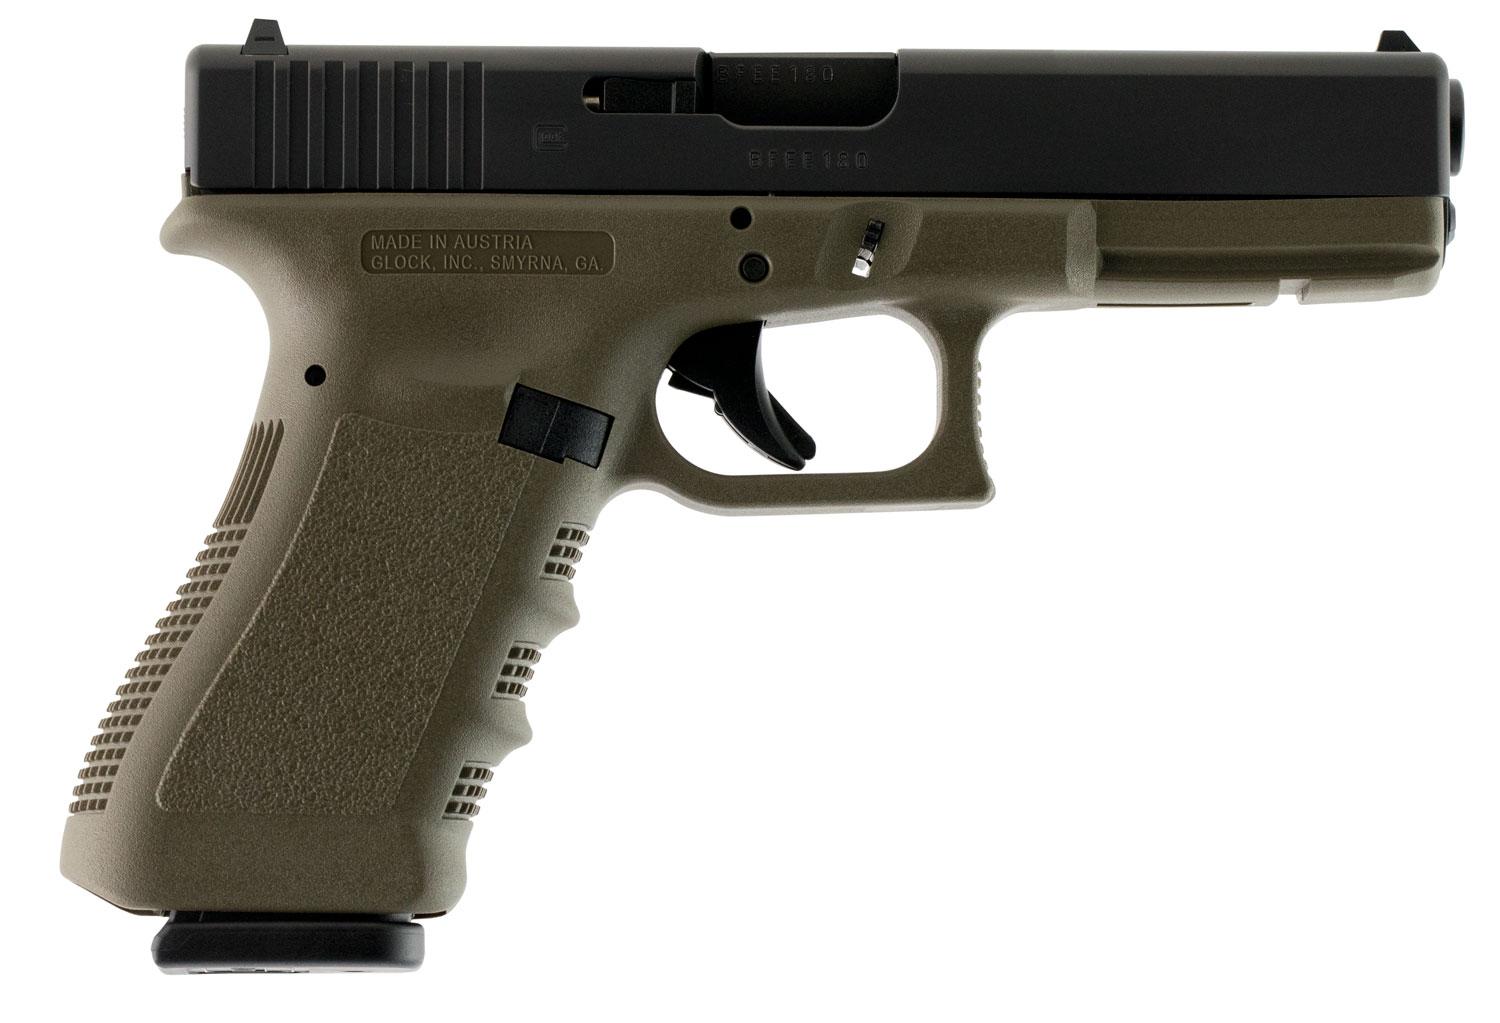 Glock G17 Standard Pistol PI1757201, 9mm Luger, 4.48", OD Green Polymer Grip/Frame, OD Green Finish, 10 Rds